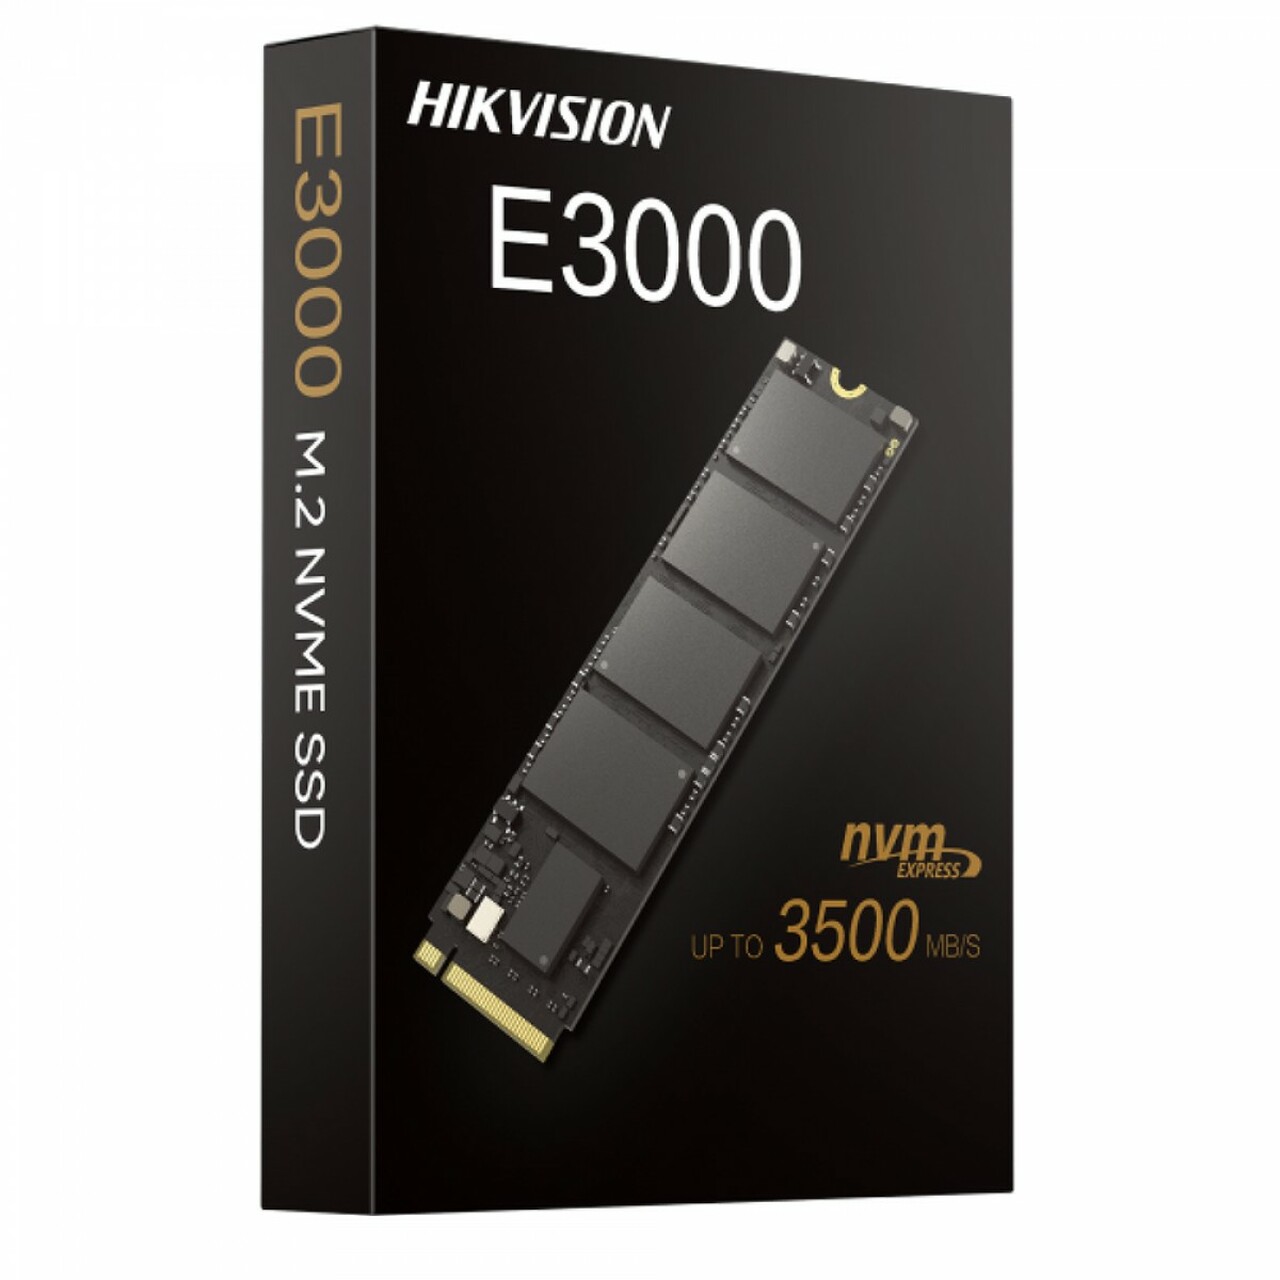 Hikvision%202048GB%20E3000%203520MB-3000MB-s%20NVMe%20HS-SSD-E3000-2048G%20Ssd%20Harddisk